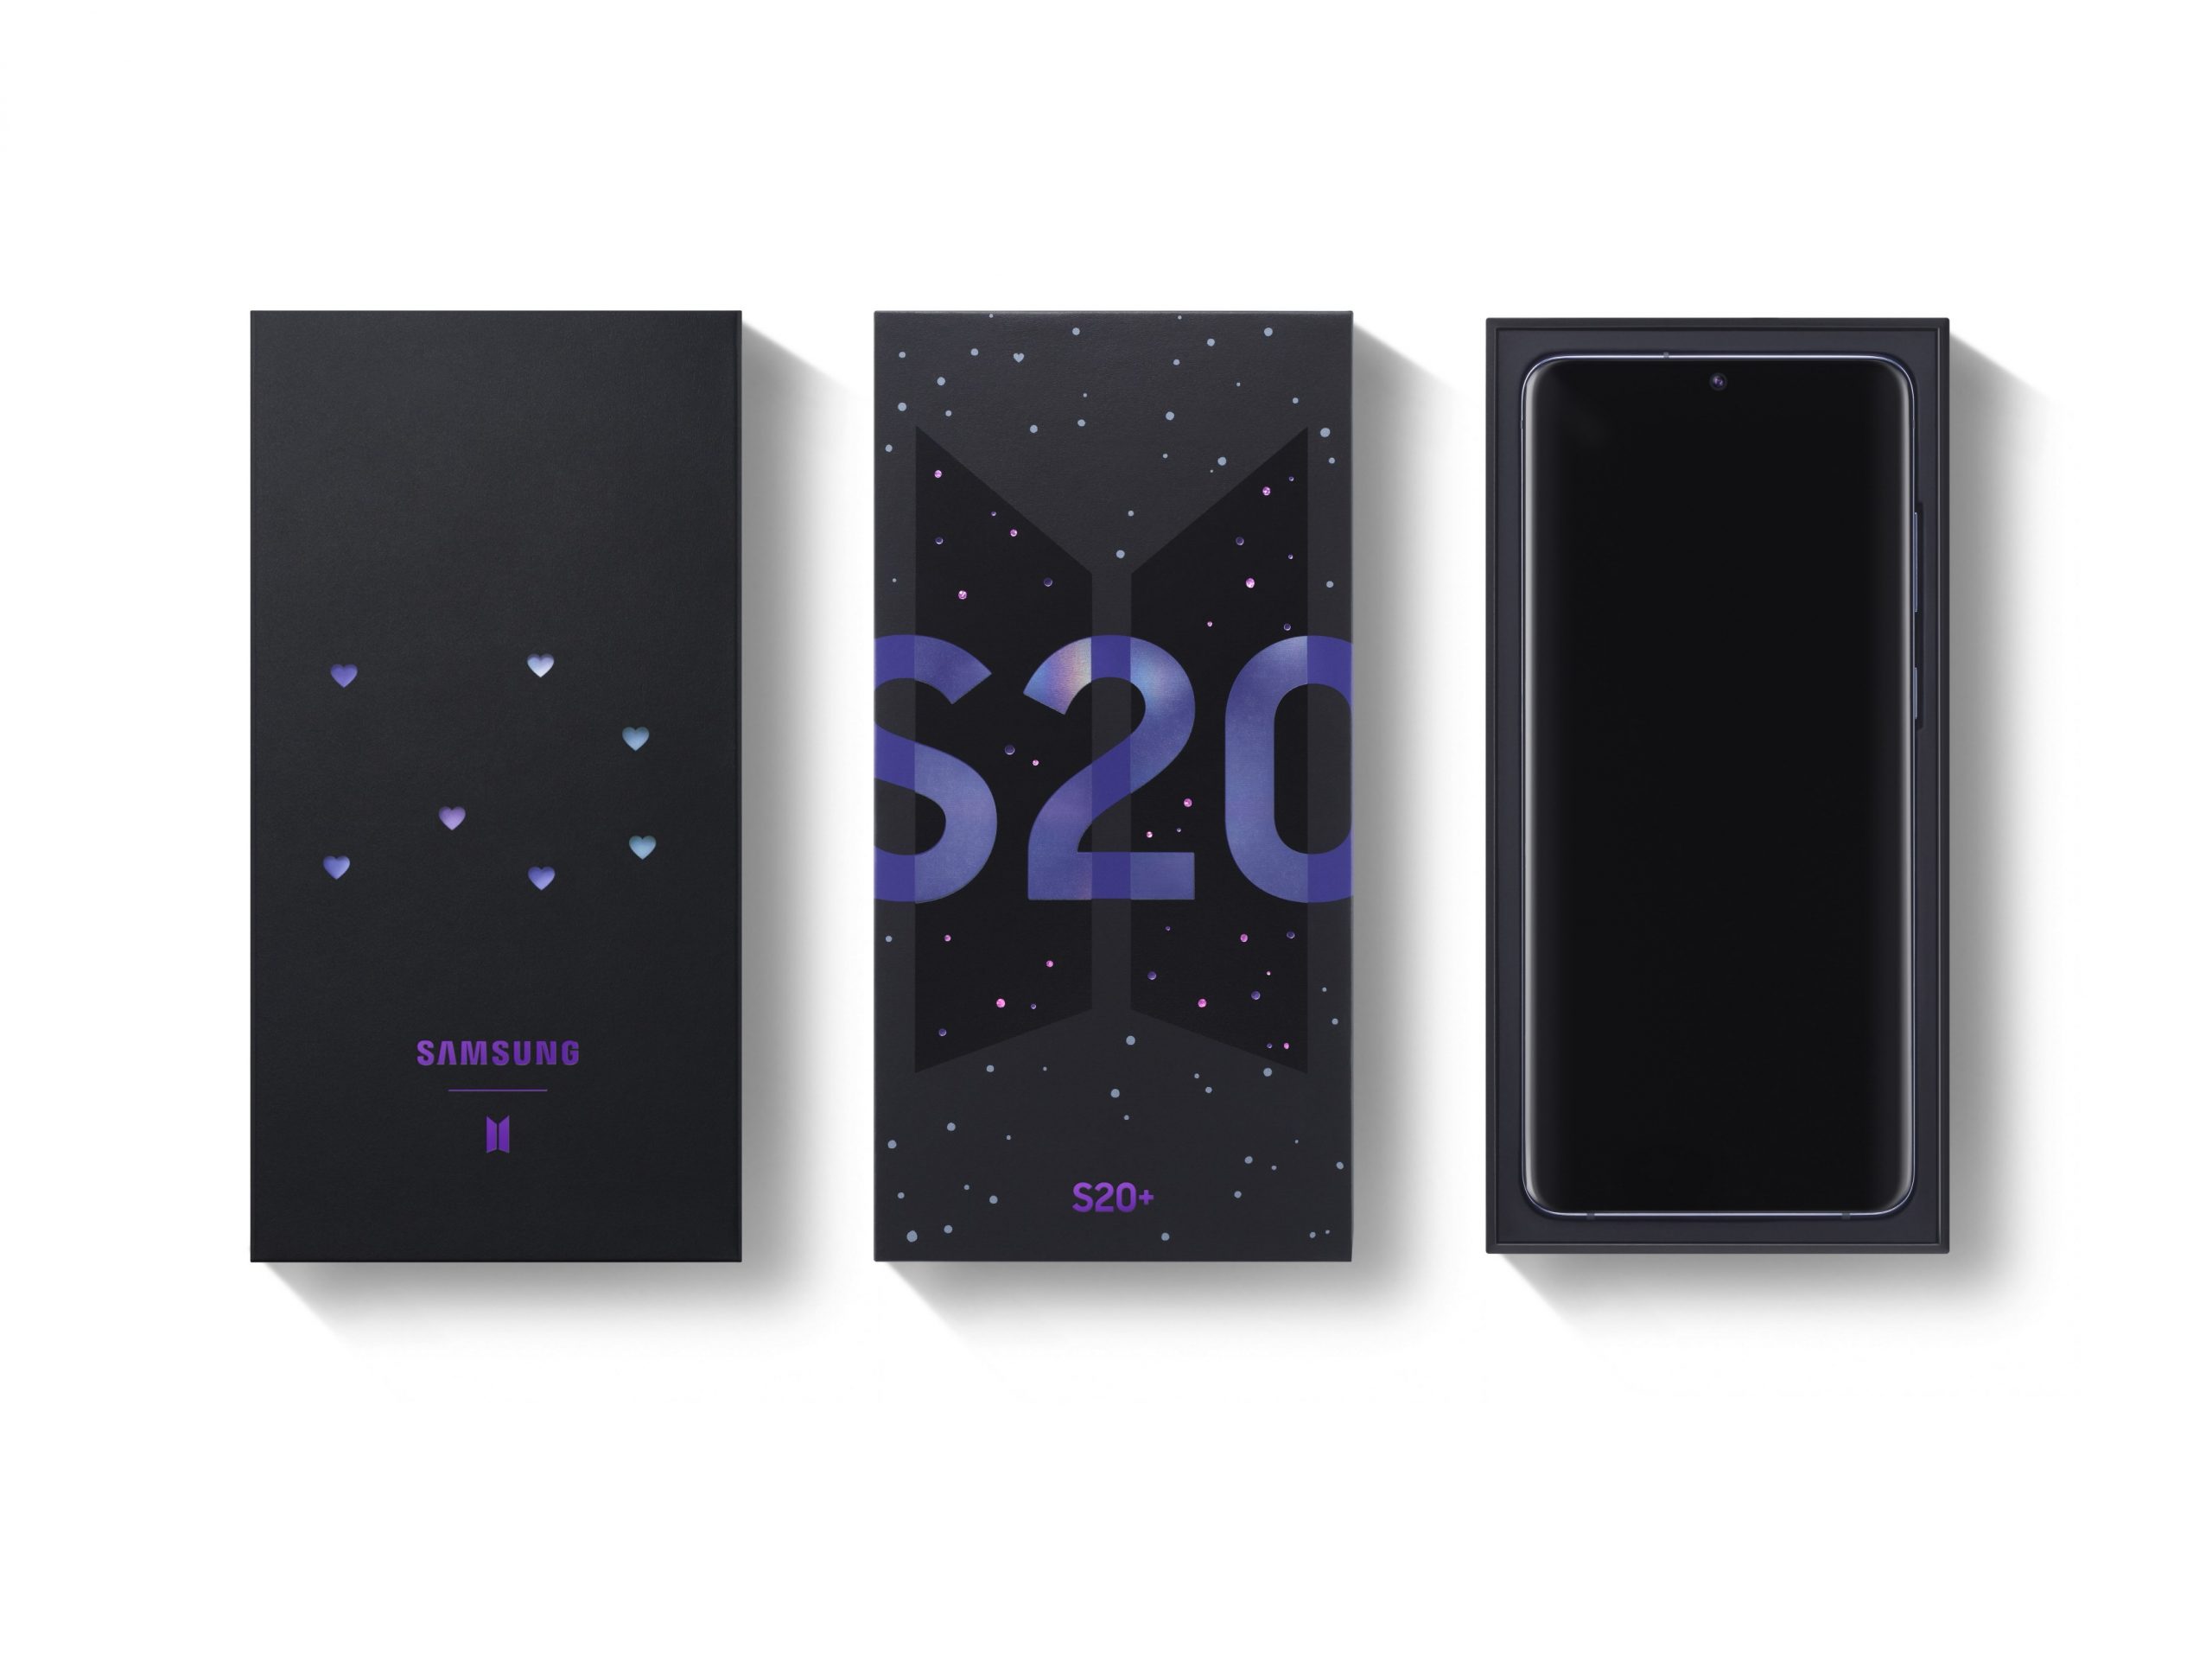 ซัมซุงเอาใจเหล่า A.R.M.Y. ไทย วางจำหน่าย Galaxy S20 รุ่นพิเศษ BTS Edition 9 กรกฎาคมนี้ ห้ามพลาด หมดแล้วหมดเลย !